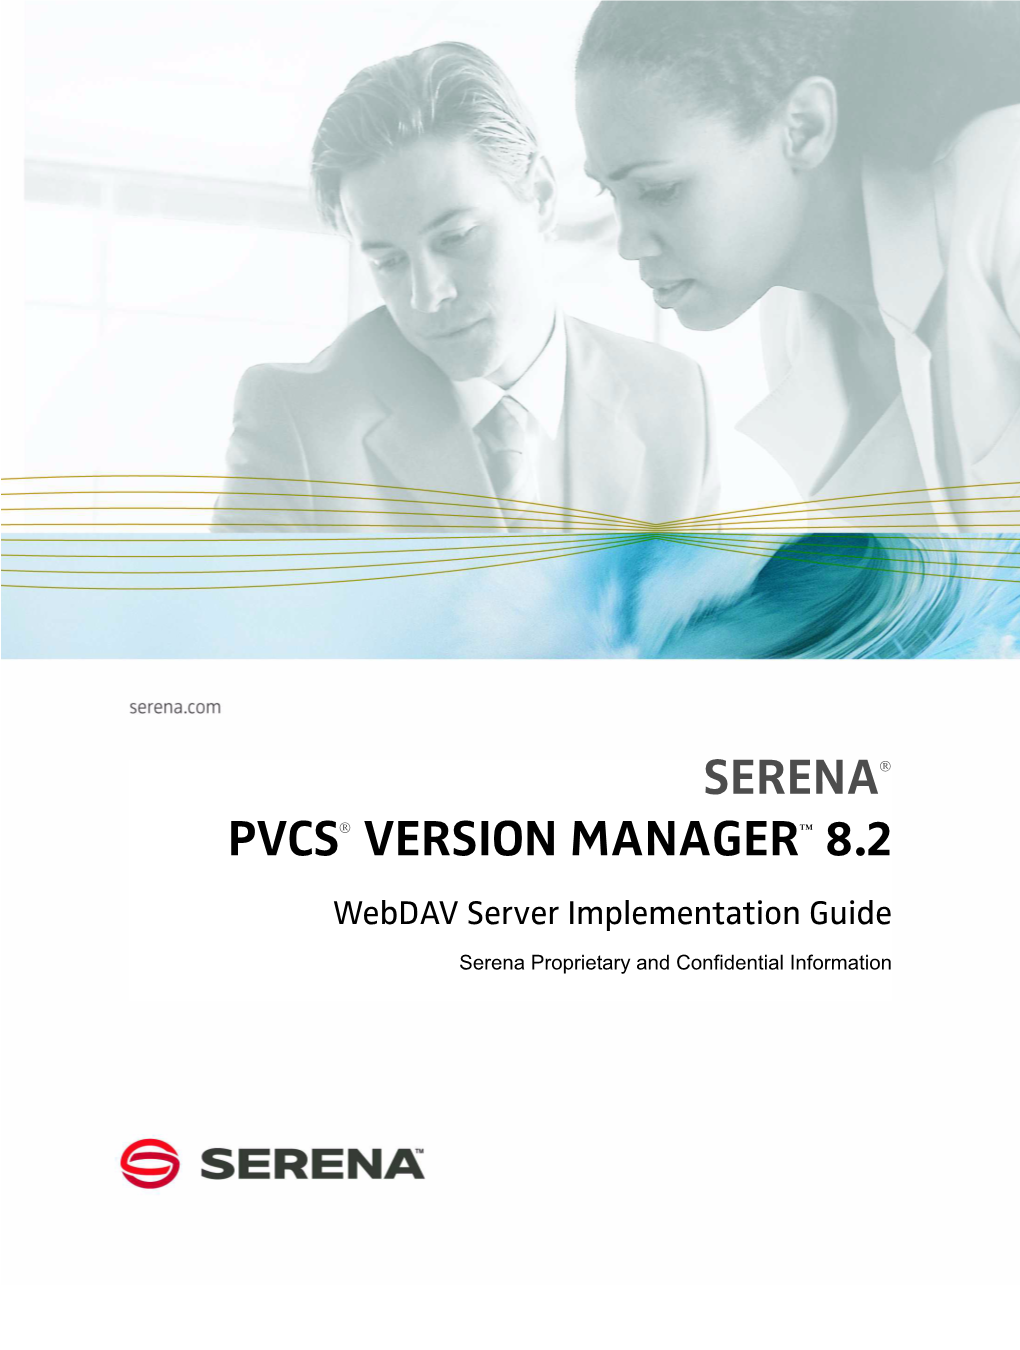 Serena PVCS Version Manager Webdav Server Implementation